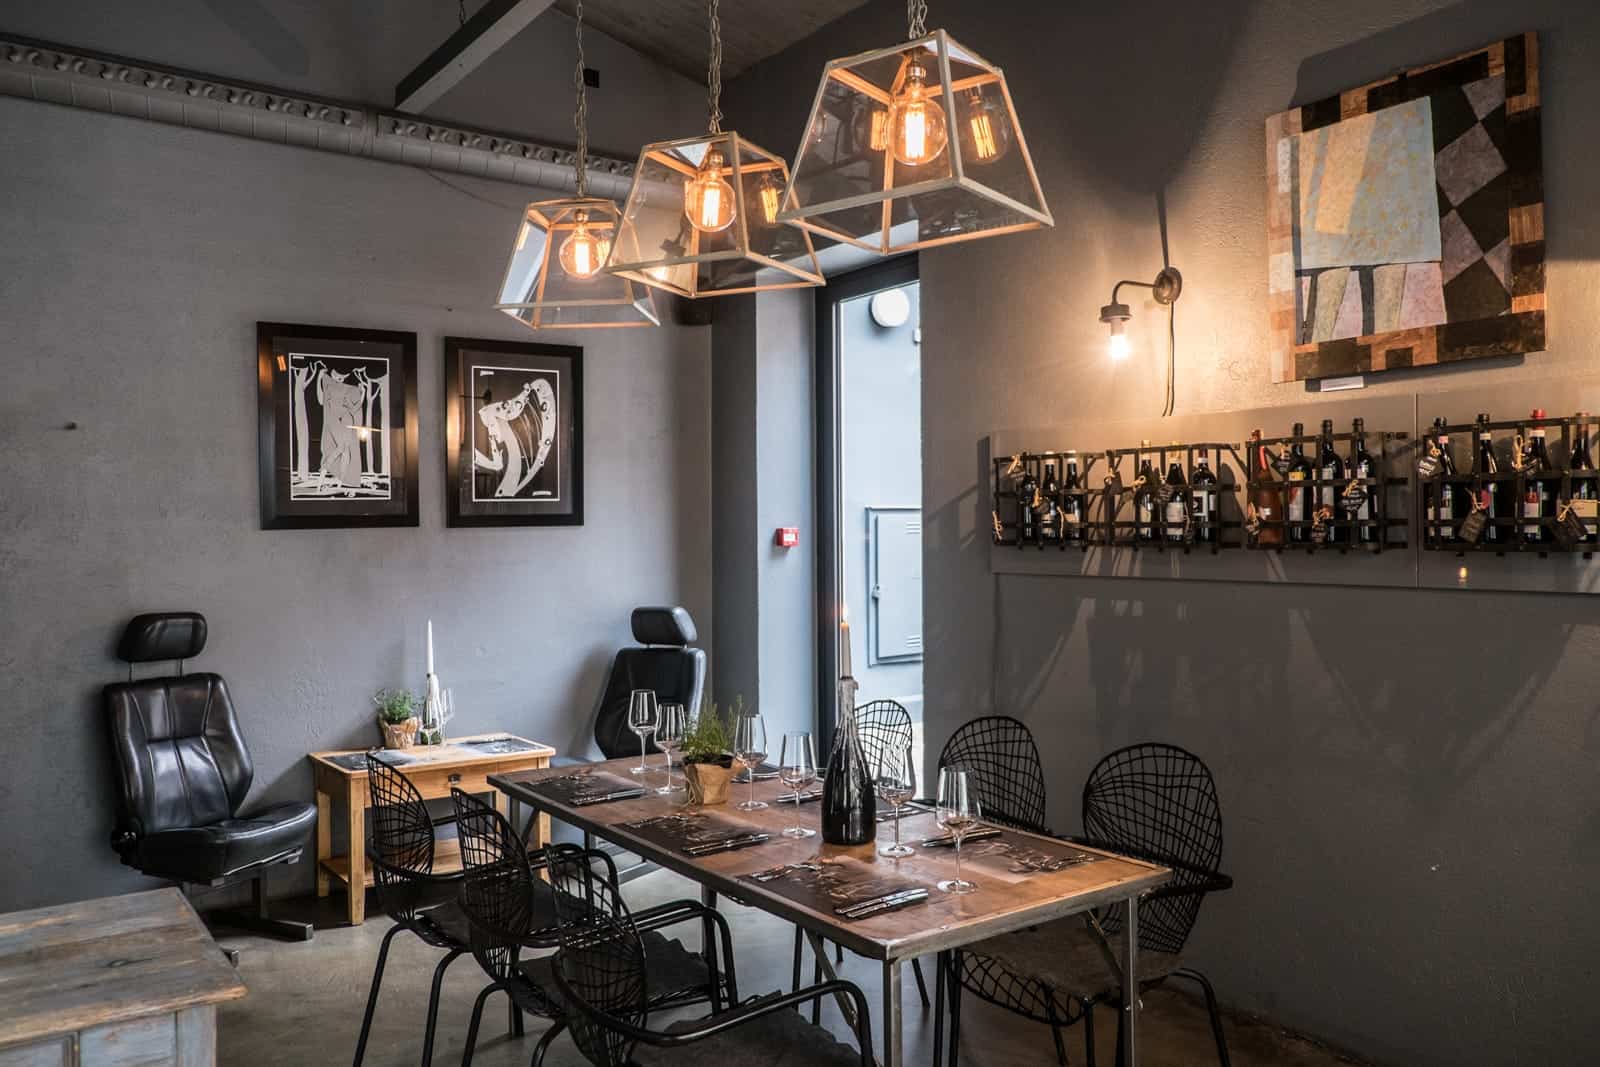 The interior of contemporary cuisine restaurant Garage Wine Bar in Riga